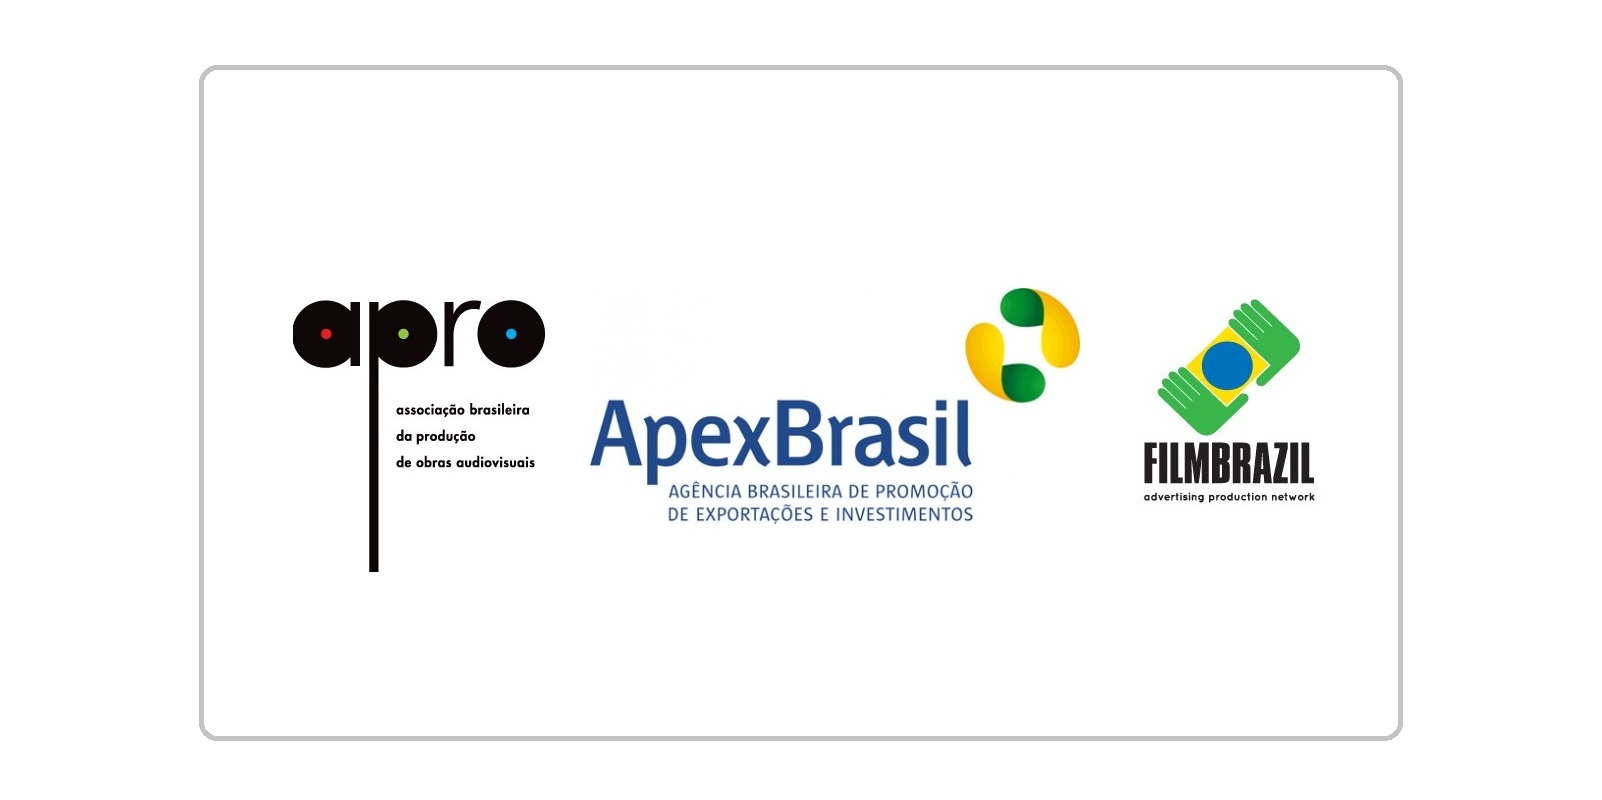 Apro e Apex-Brasil renovam parceria e anunciam mudança no posicionamento do  projeto Filmbrazil